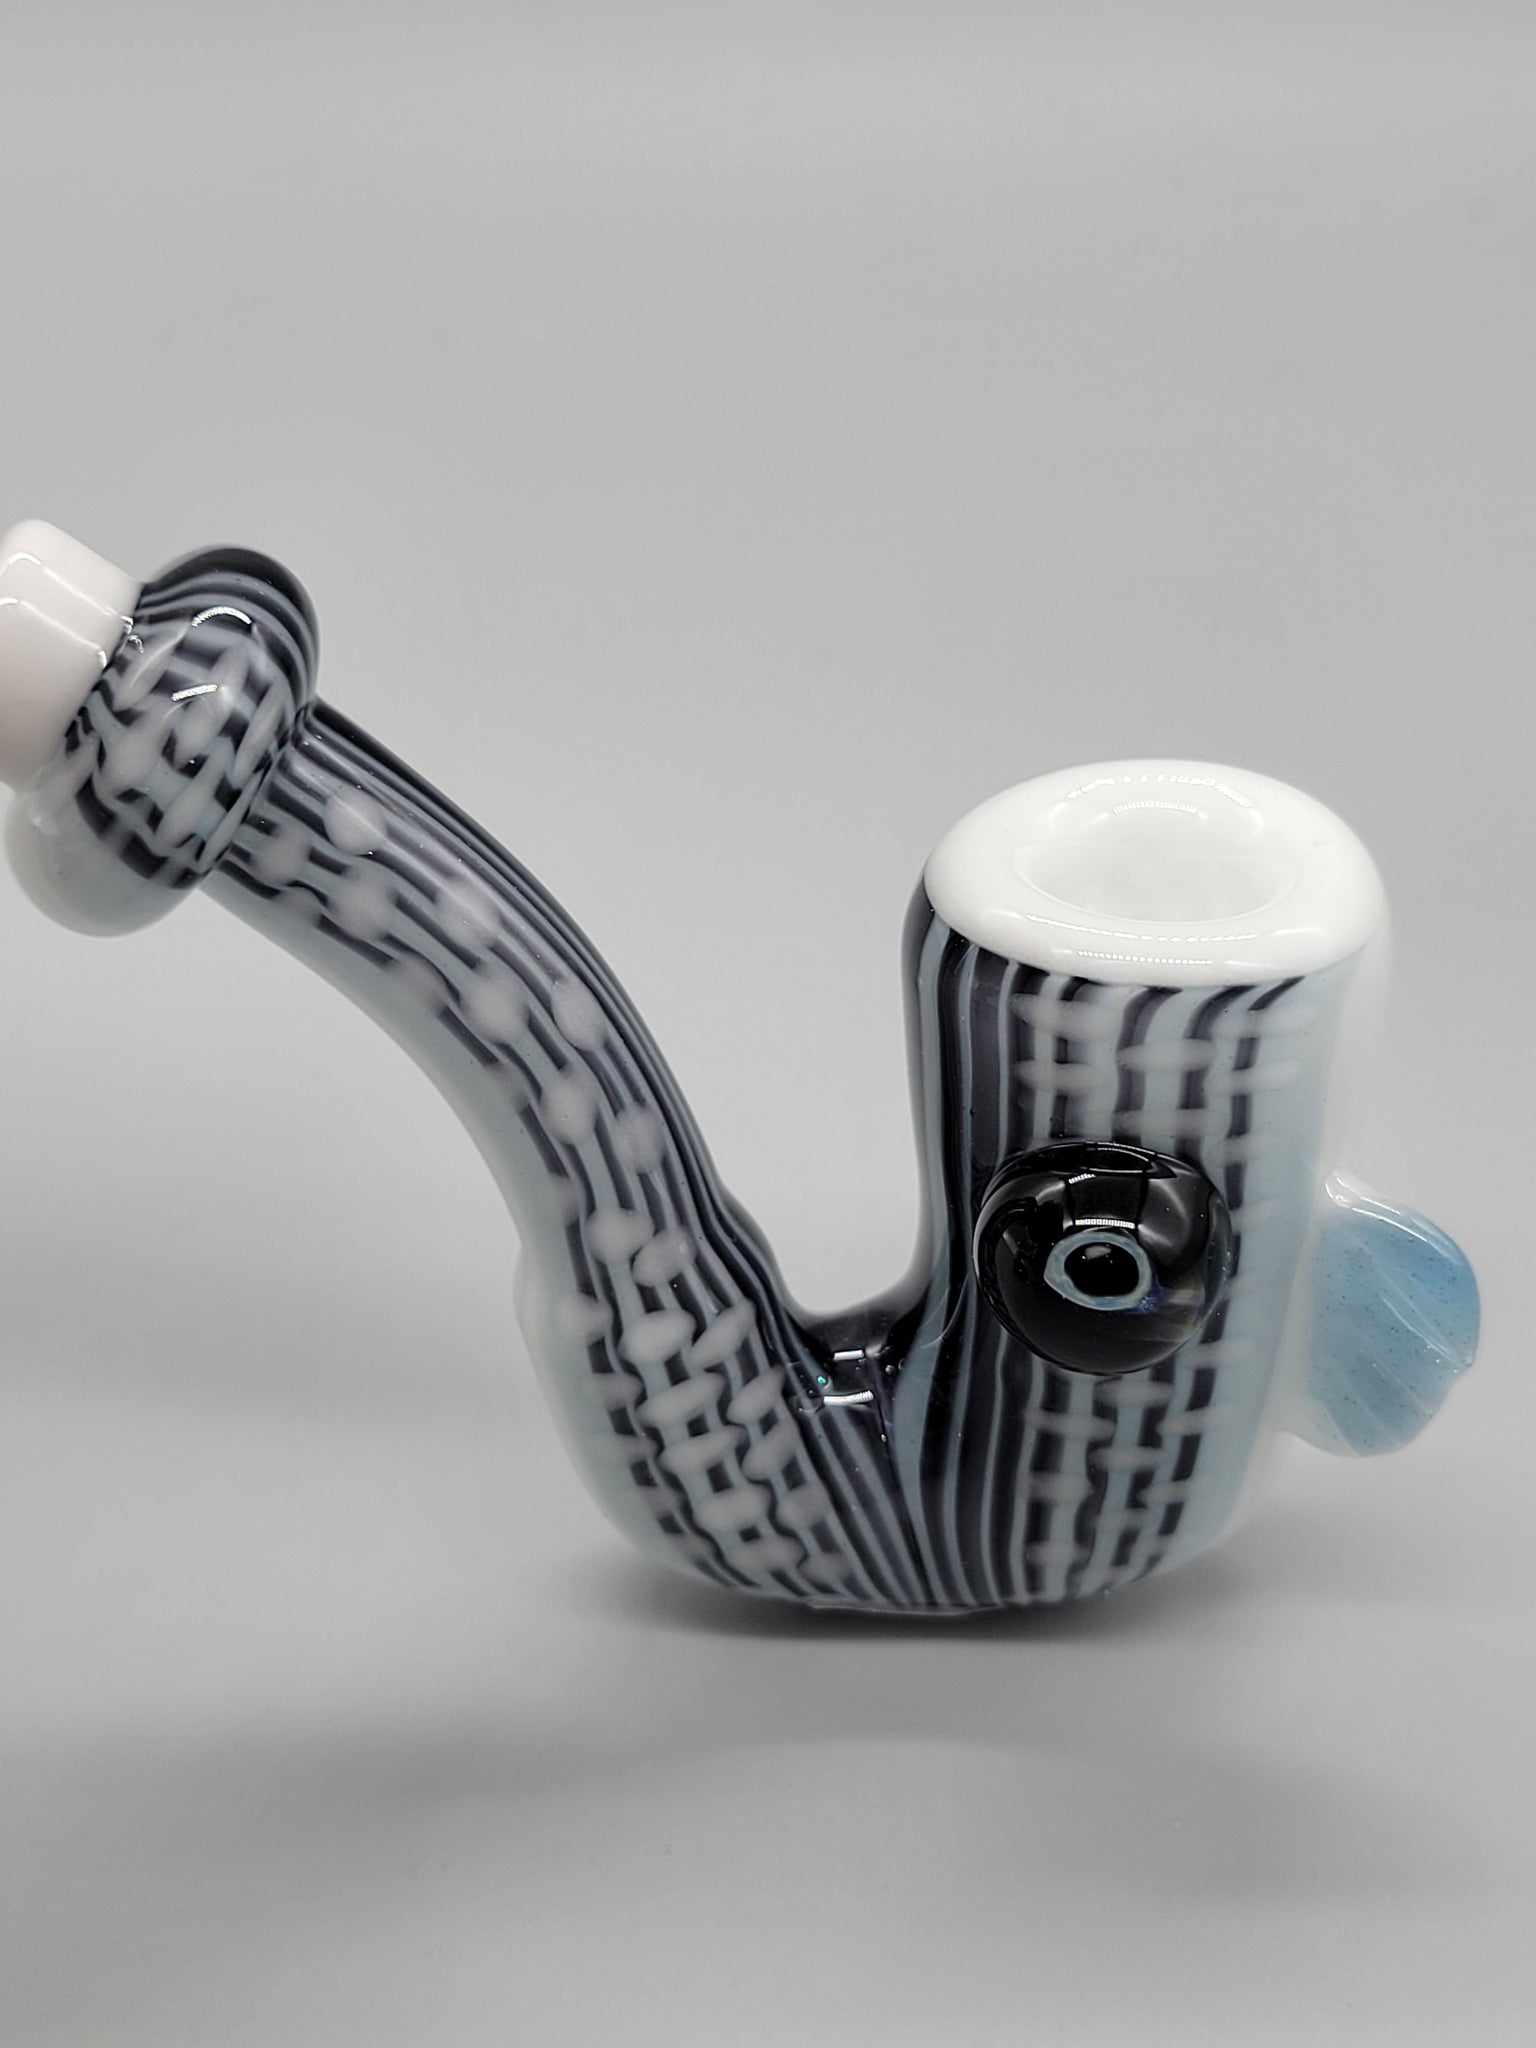 603 Glass Sherlock Dry Pipe